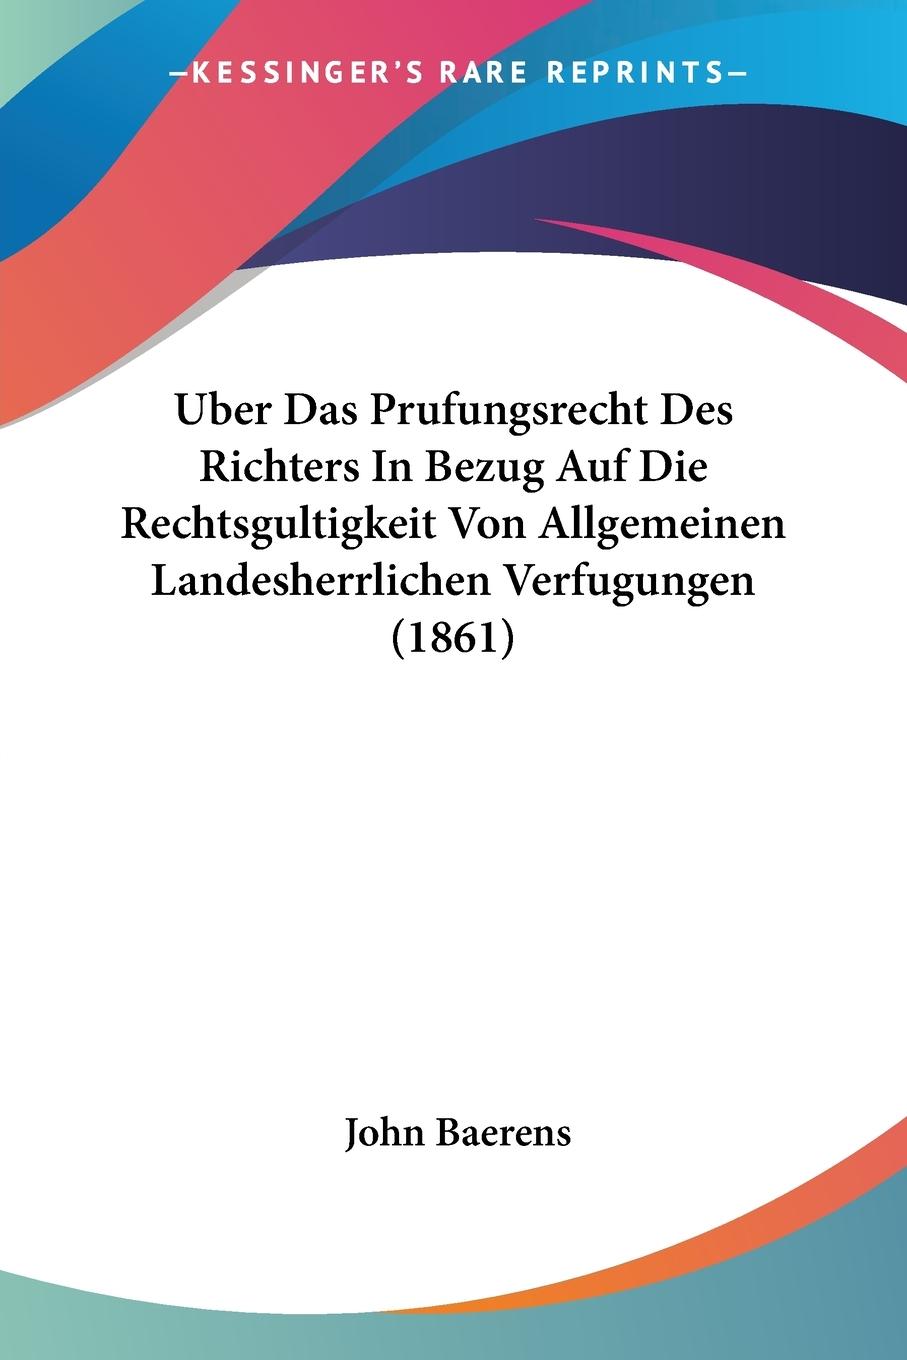 Uber Das Prufungsrecht Des Richters In Bezug Auf Die Rechtsgultigkeit Von Allgemeinen Landesherrlichen Verfugungen (1861) - Baerens, John